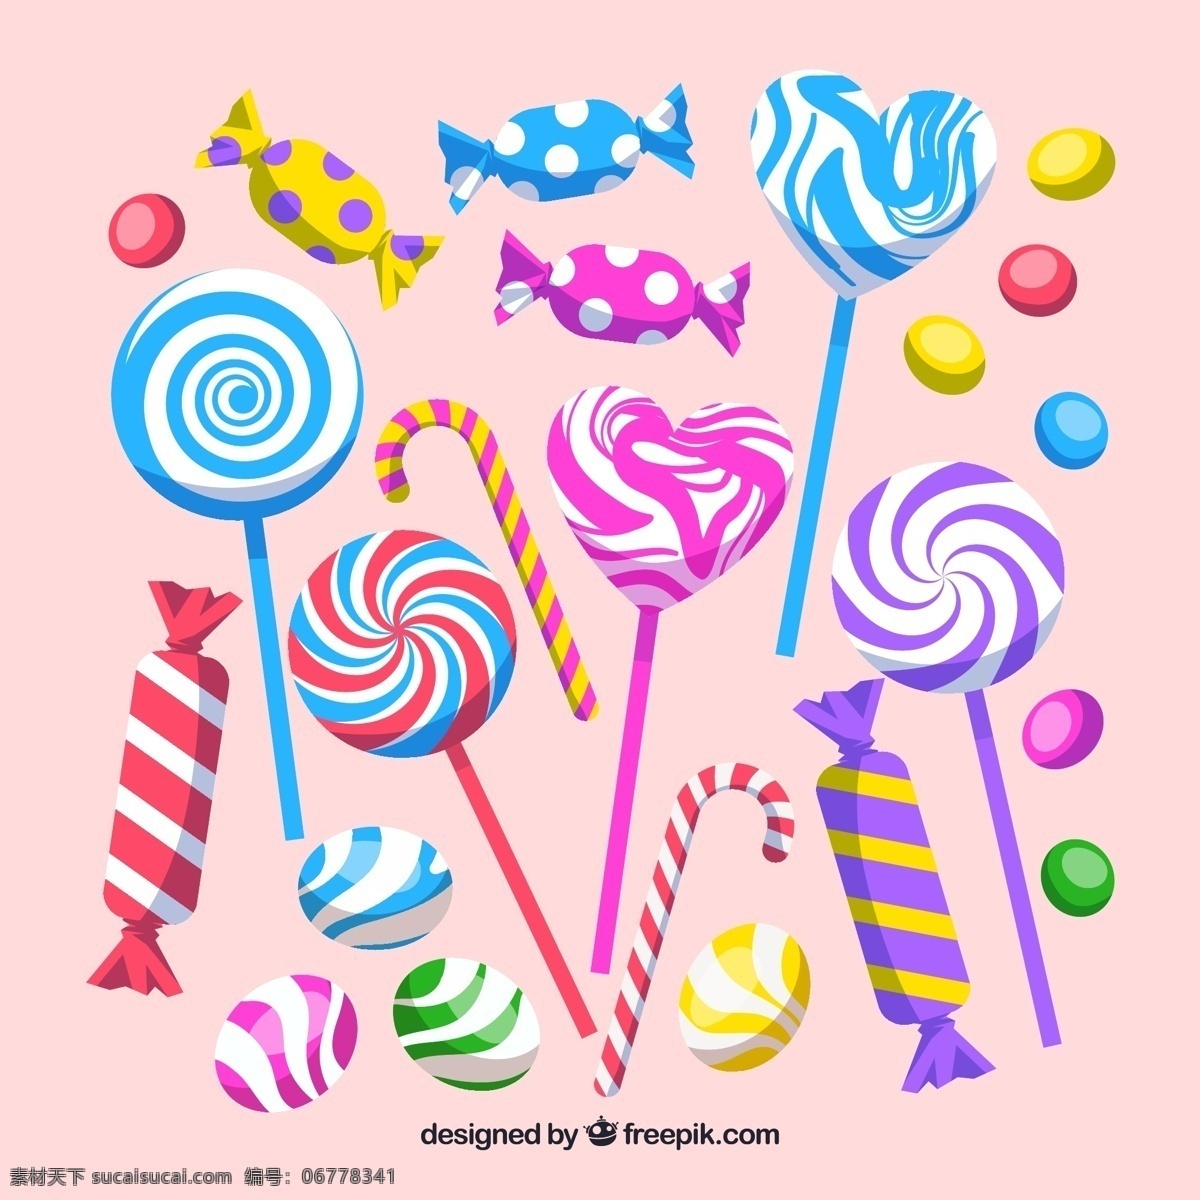 彩色糖果 24款 彩色 糖果 棒棒糖 彩虹糖 软糖 美食 生活百科 餐饮美食